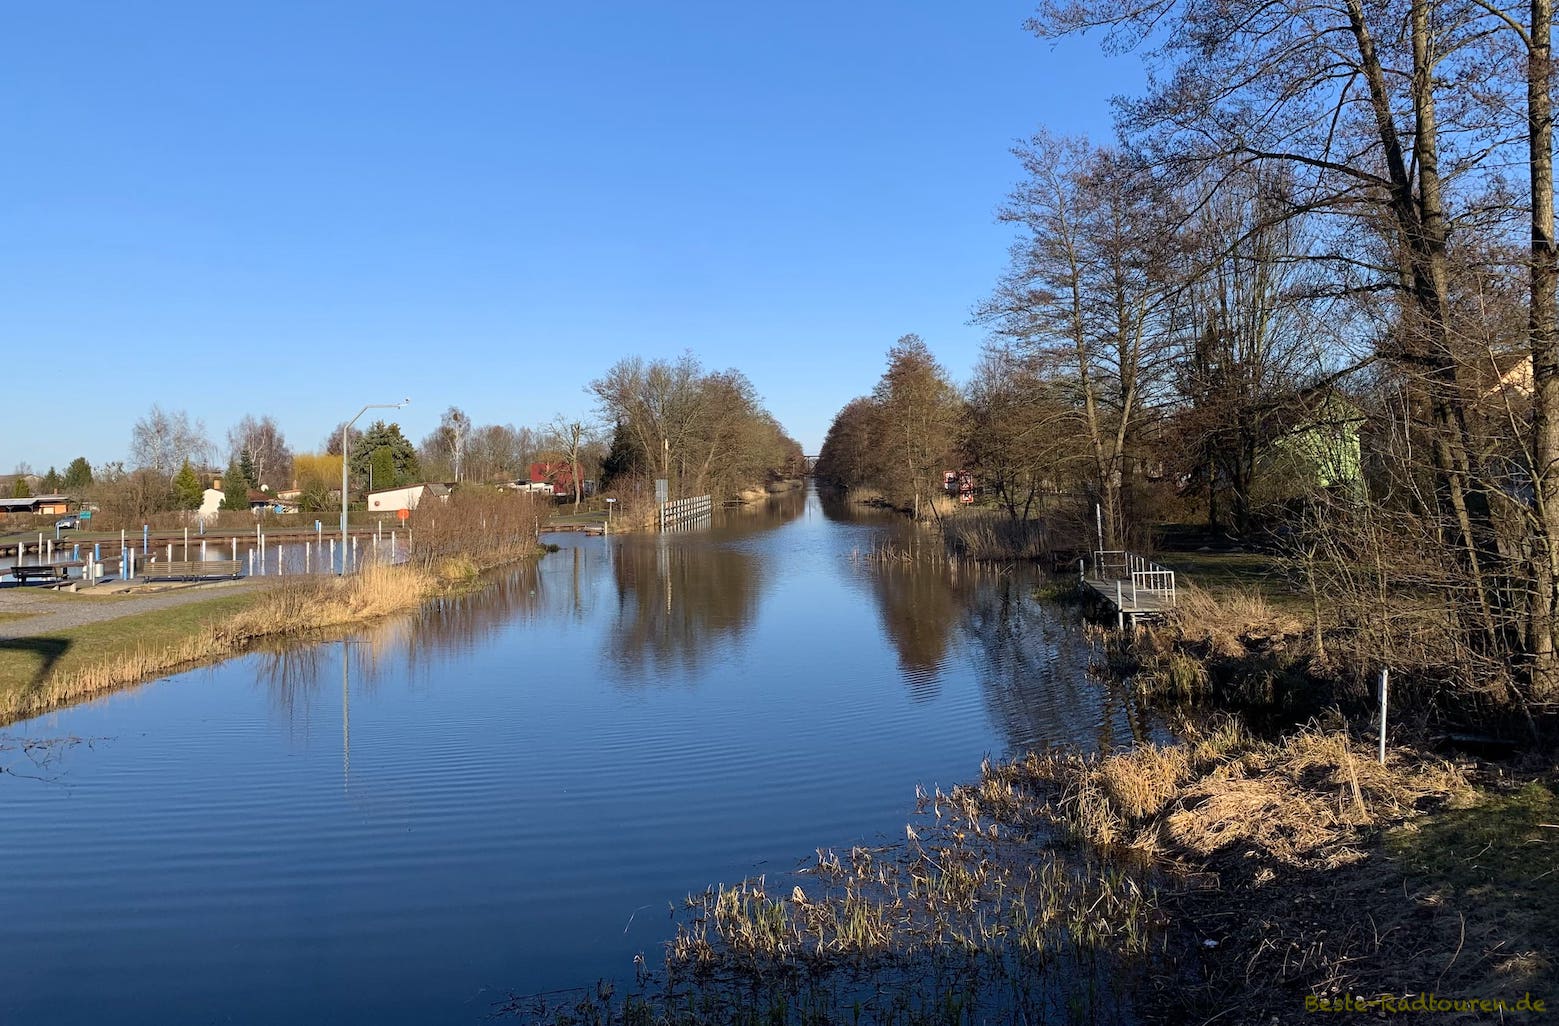 Finowkanal/ Langer Trödel in Liebenwalde, Foto von der Brücke